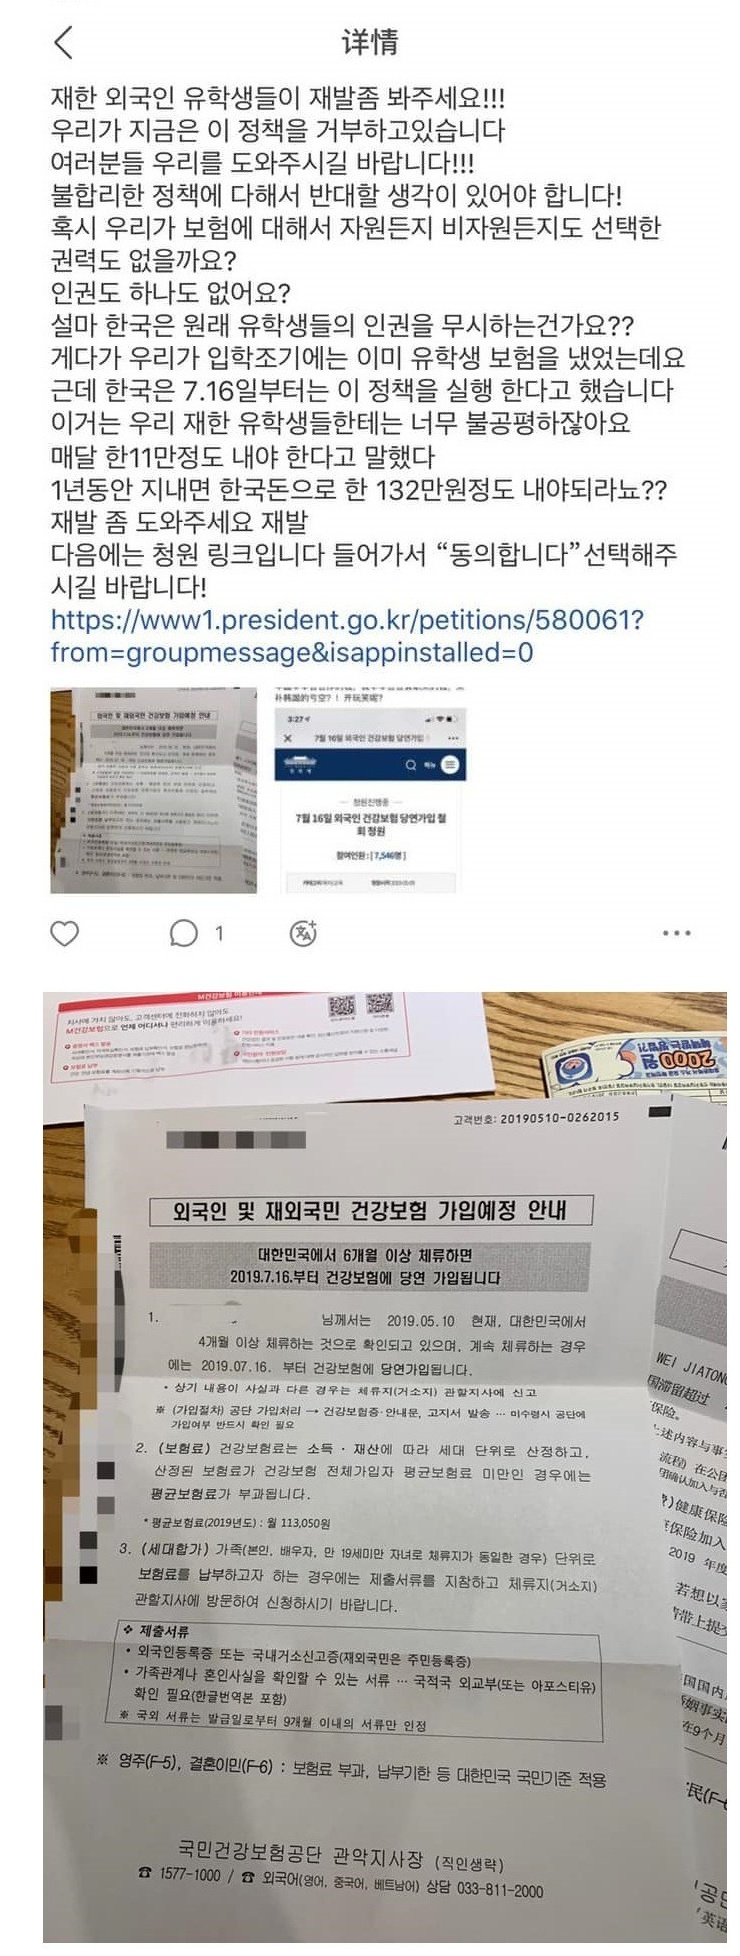  한국 정부에 열받은 조선족